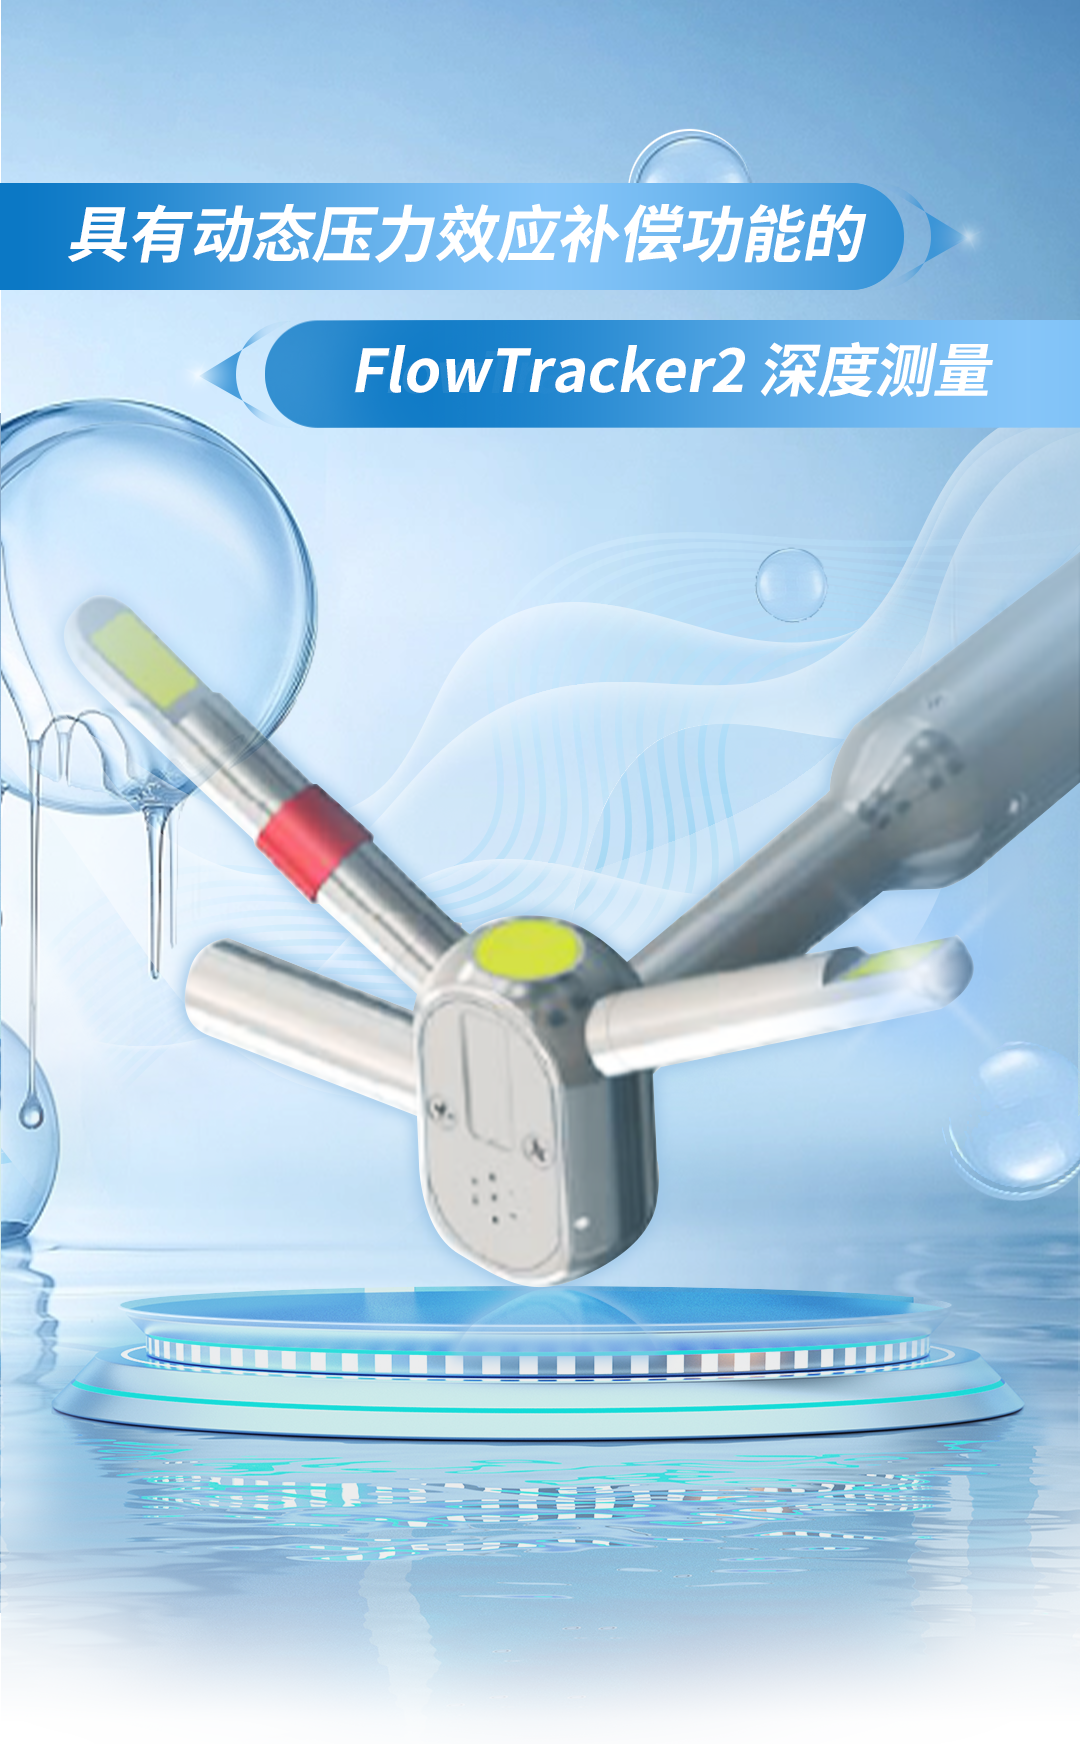 深度测量 ׀ 具有动态压力效应补偿功能的 FlowTracker2